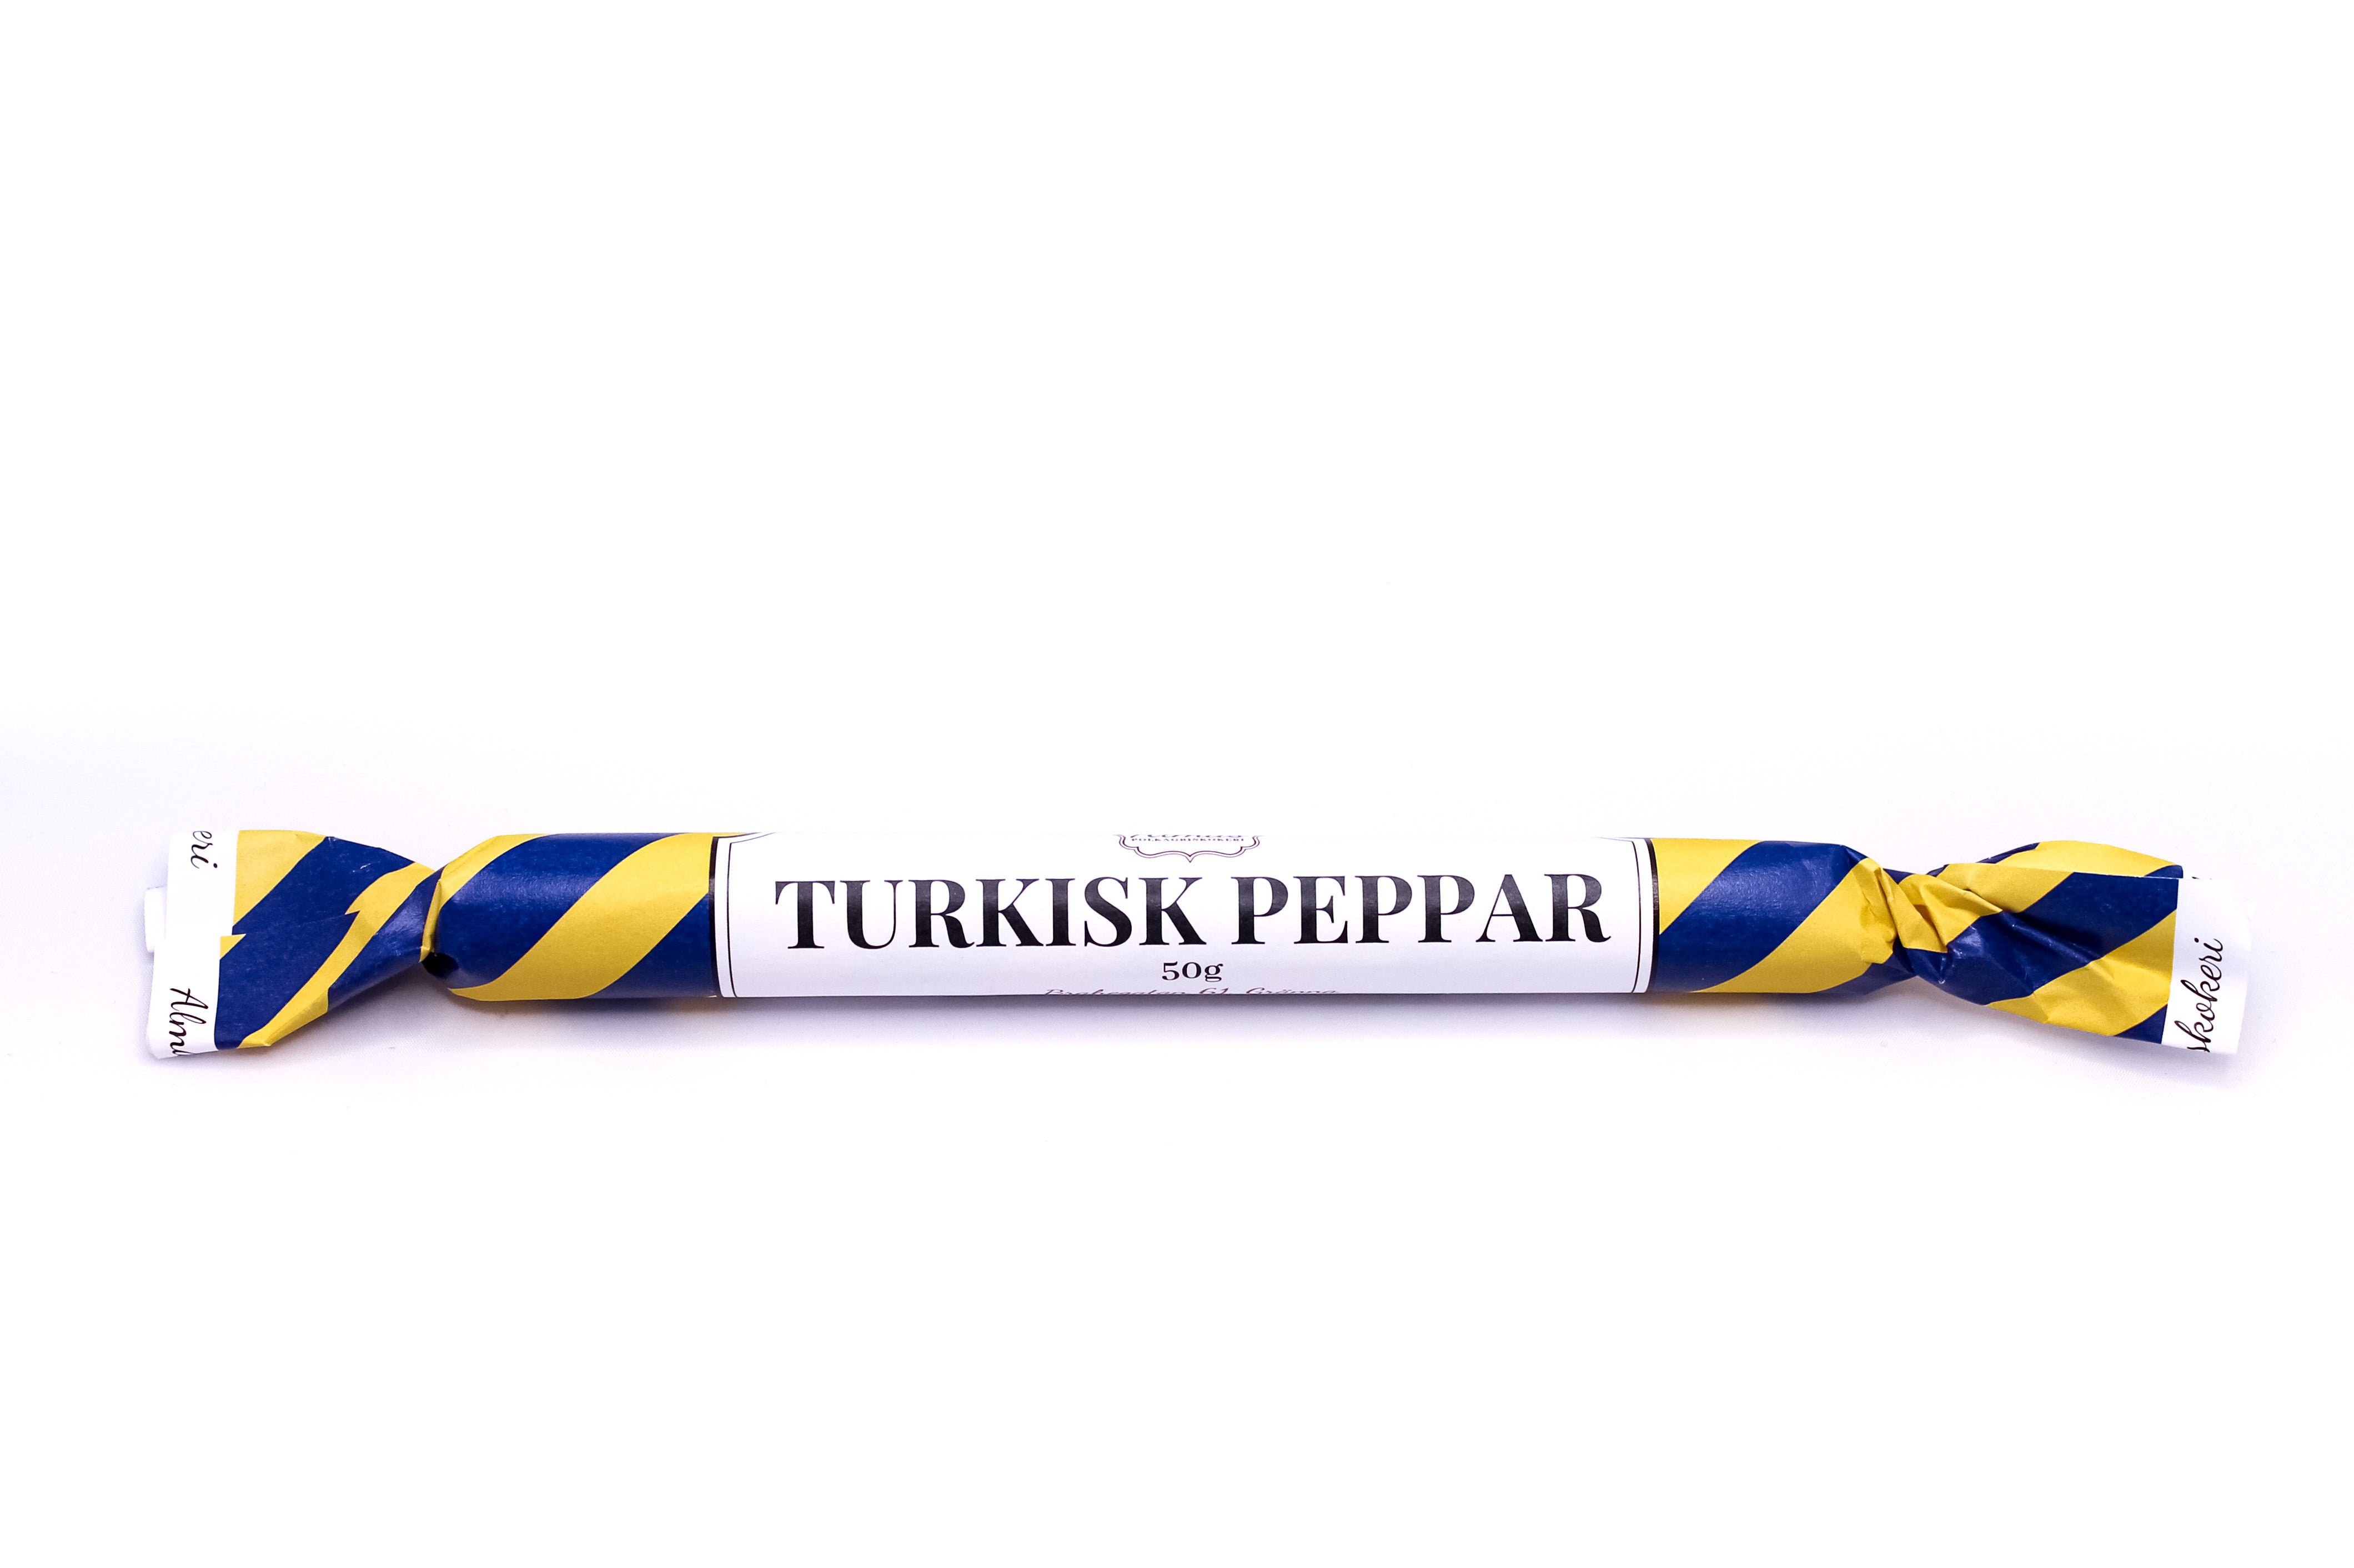 Turkisk peppar